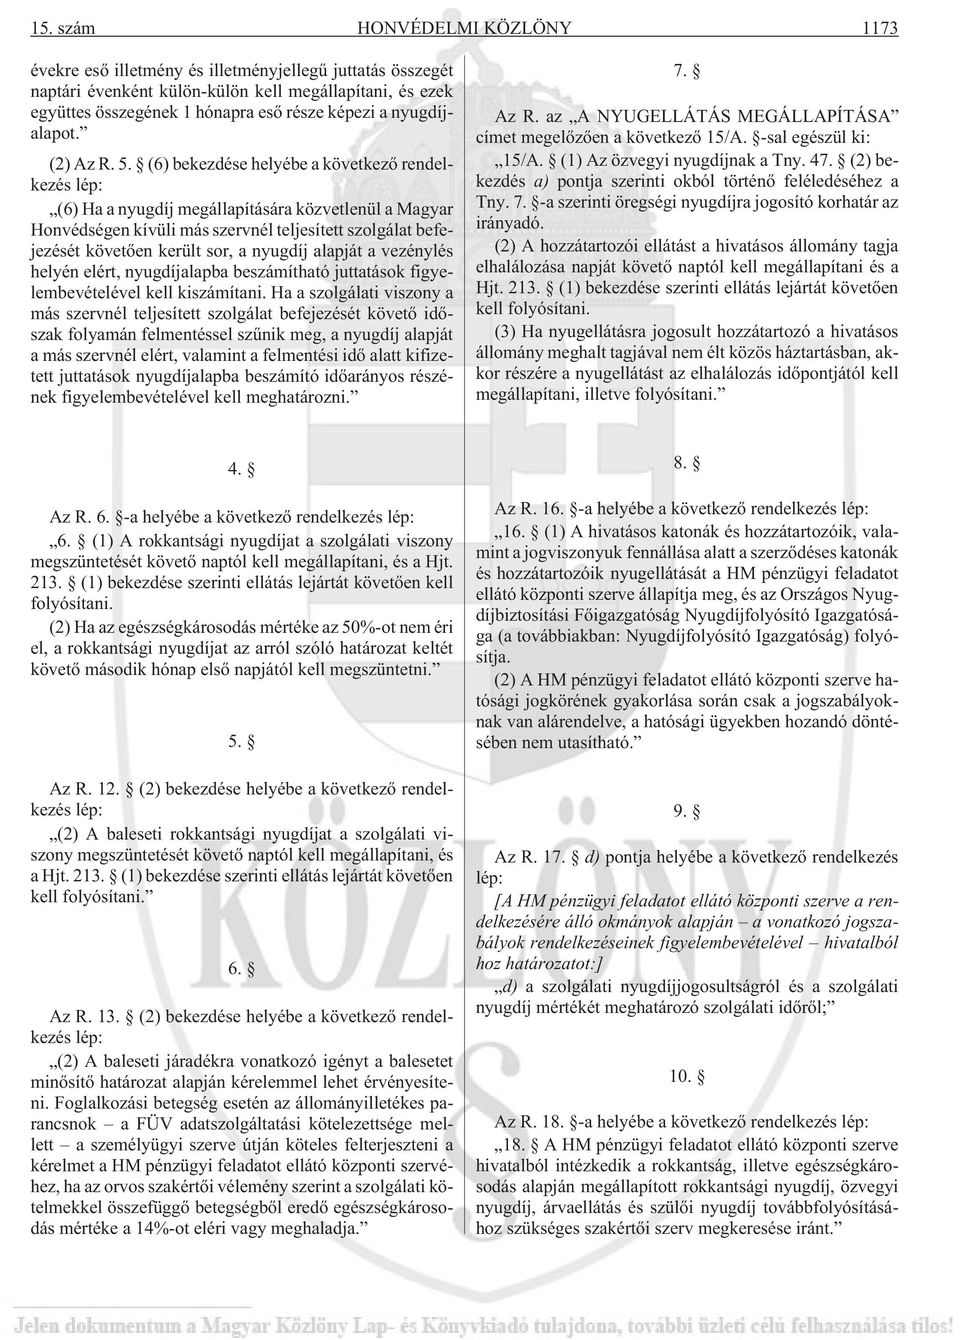 (6) bekezdése helyébe a következõ rendelkezés lép: (6) Ha a nyugdíj megállapítására közvetlenül a Magyar Honvédségen kívüli más szervnél teljesített szolgálat befejezését követõen került sor, a